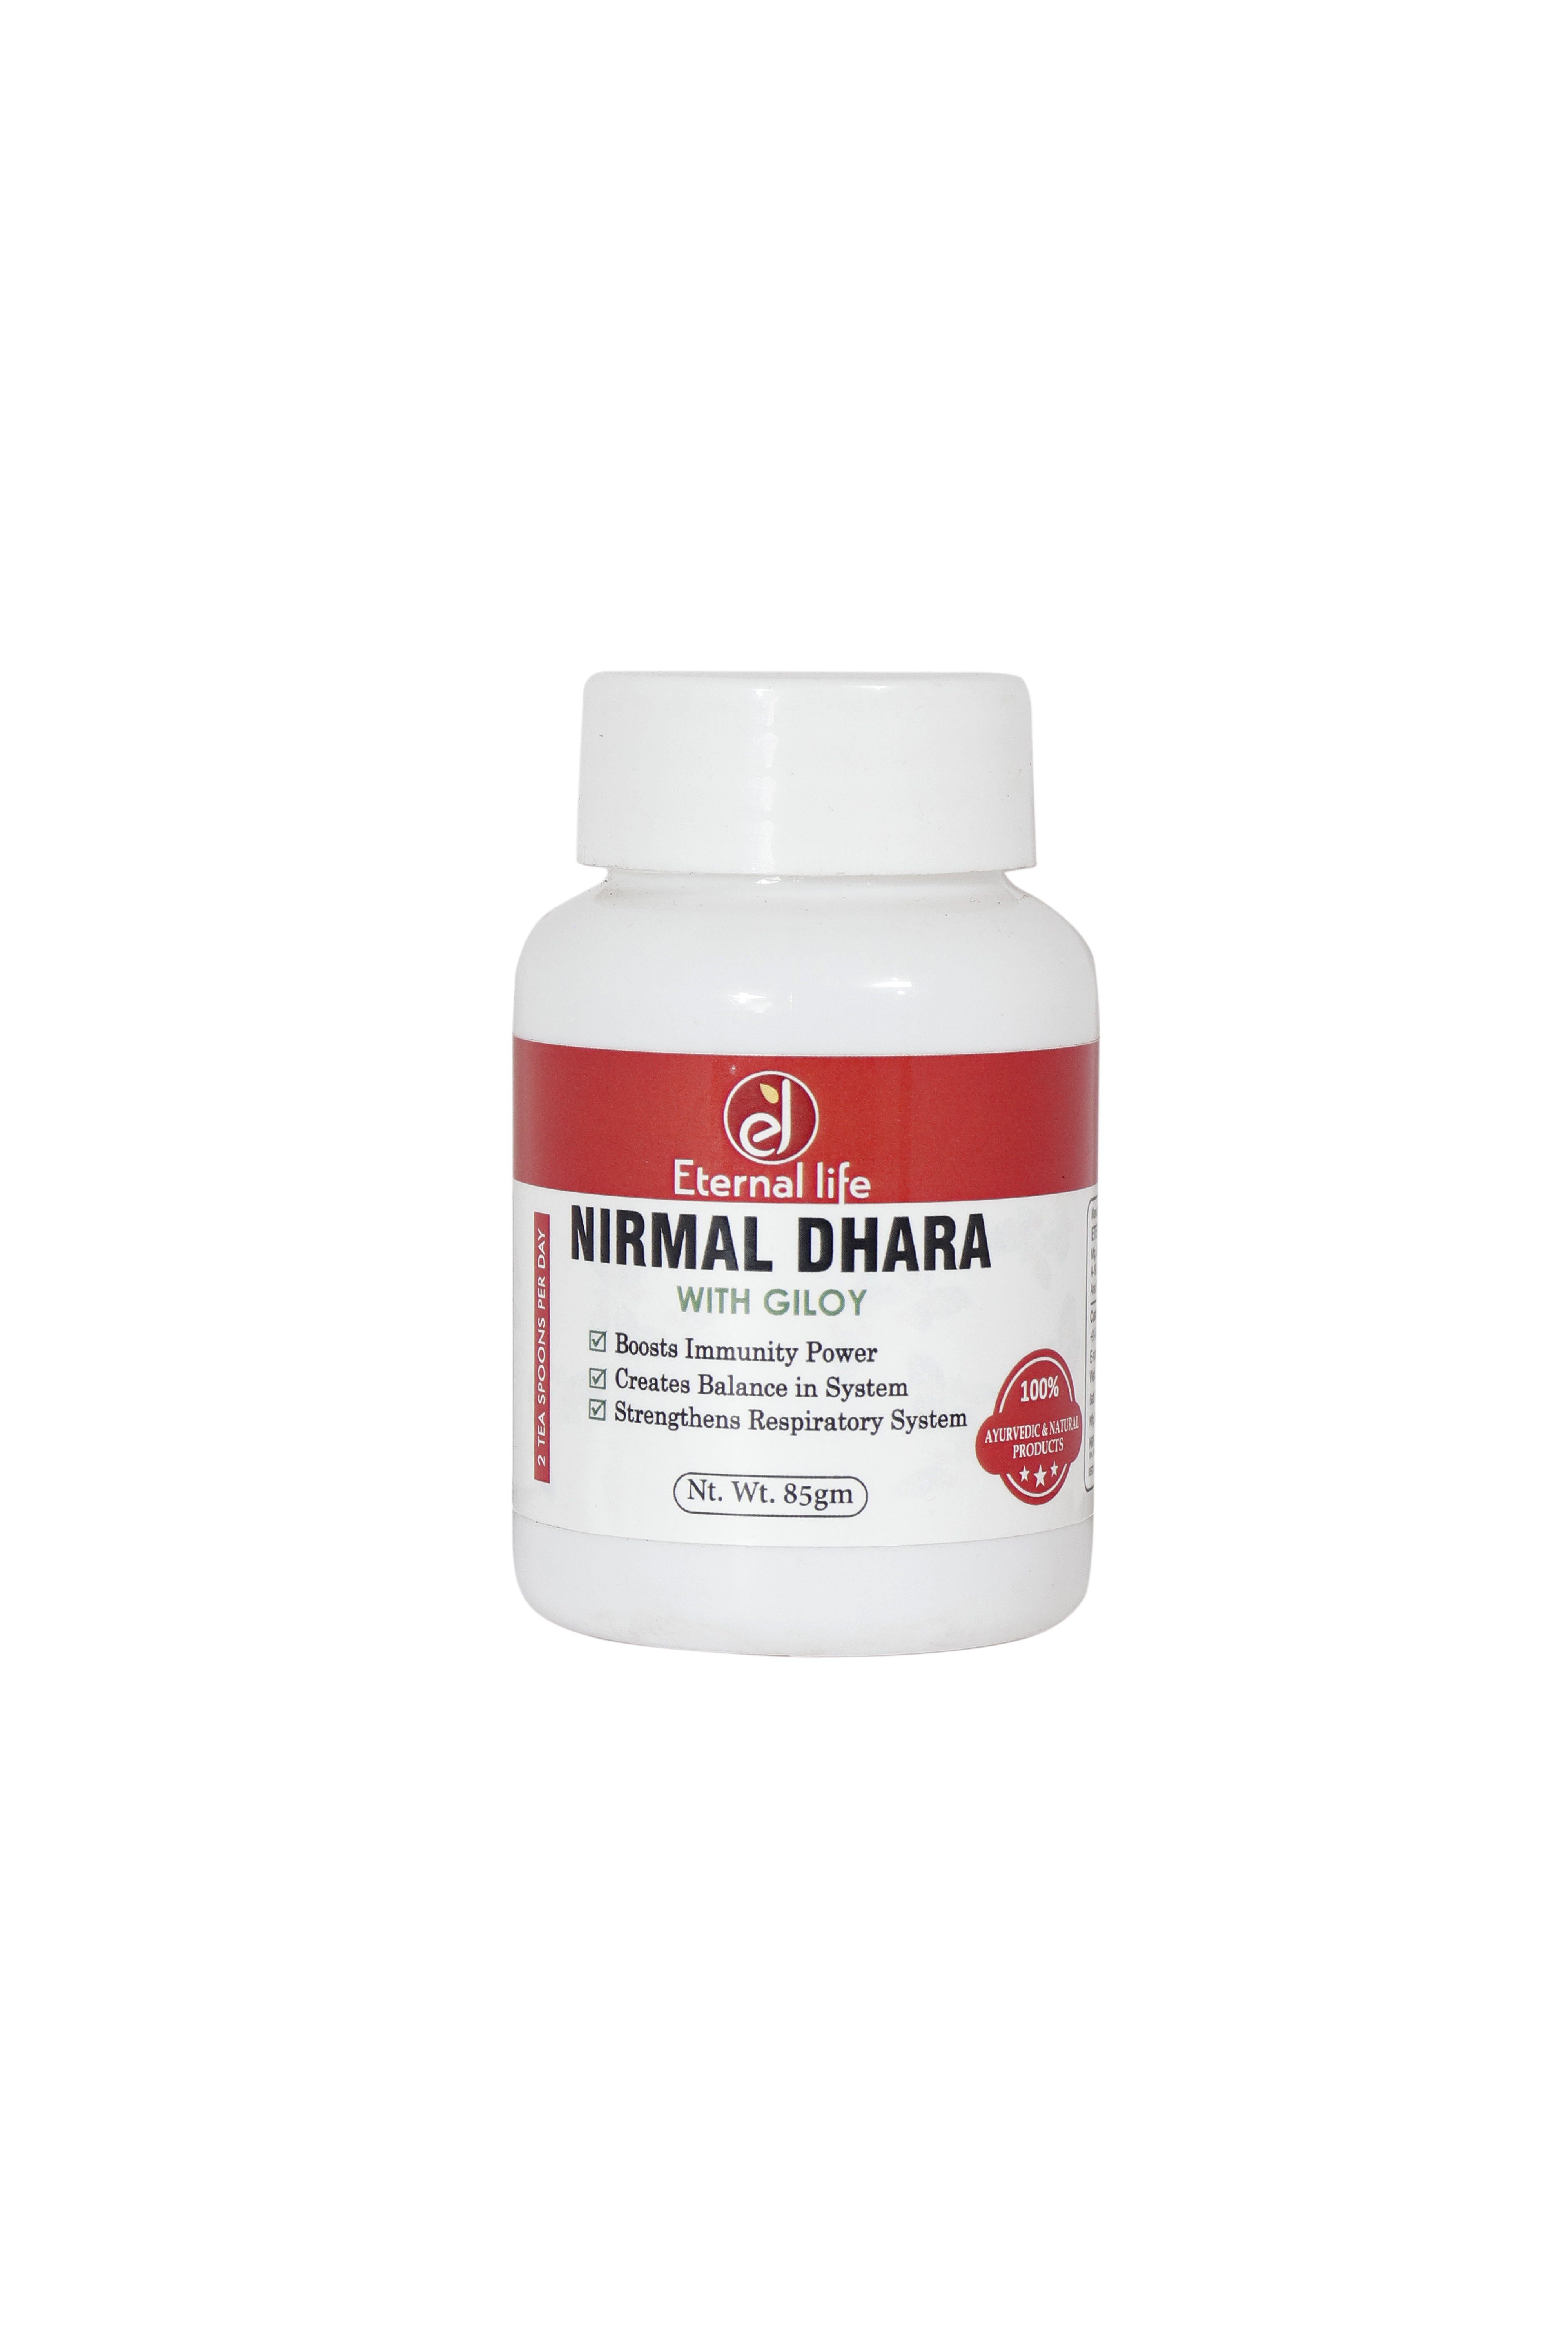 Buy Eternal Life Nirmal Dhara at Best Price Online